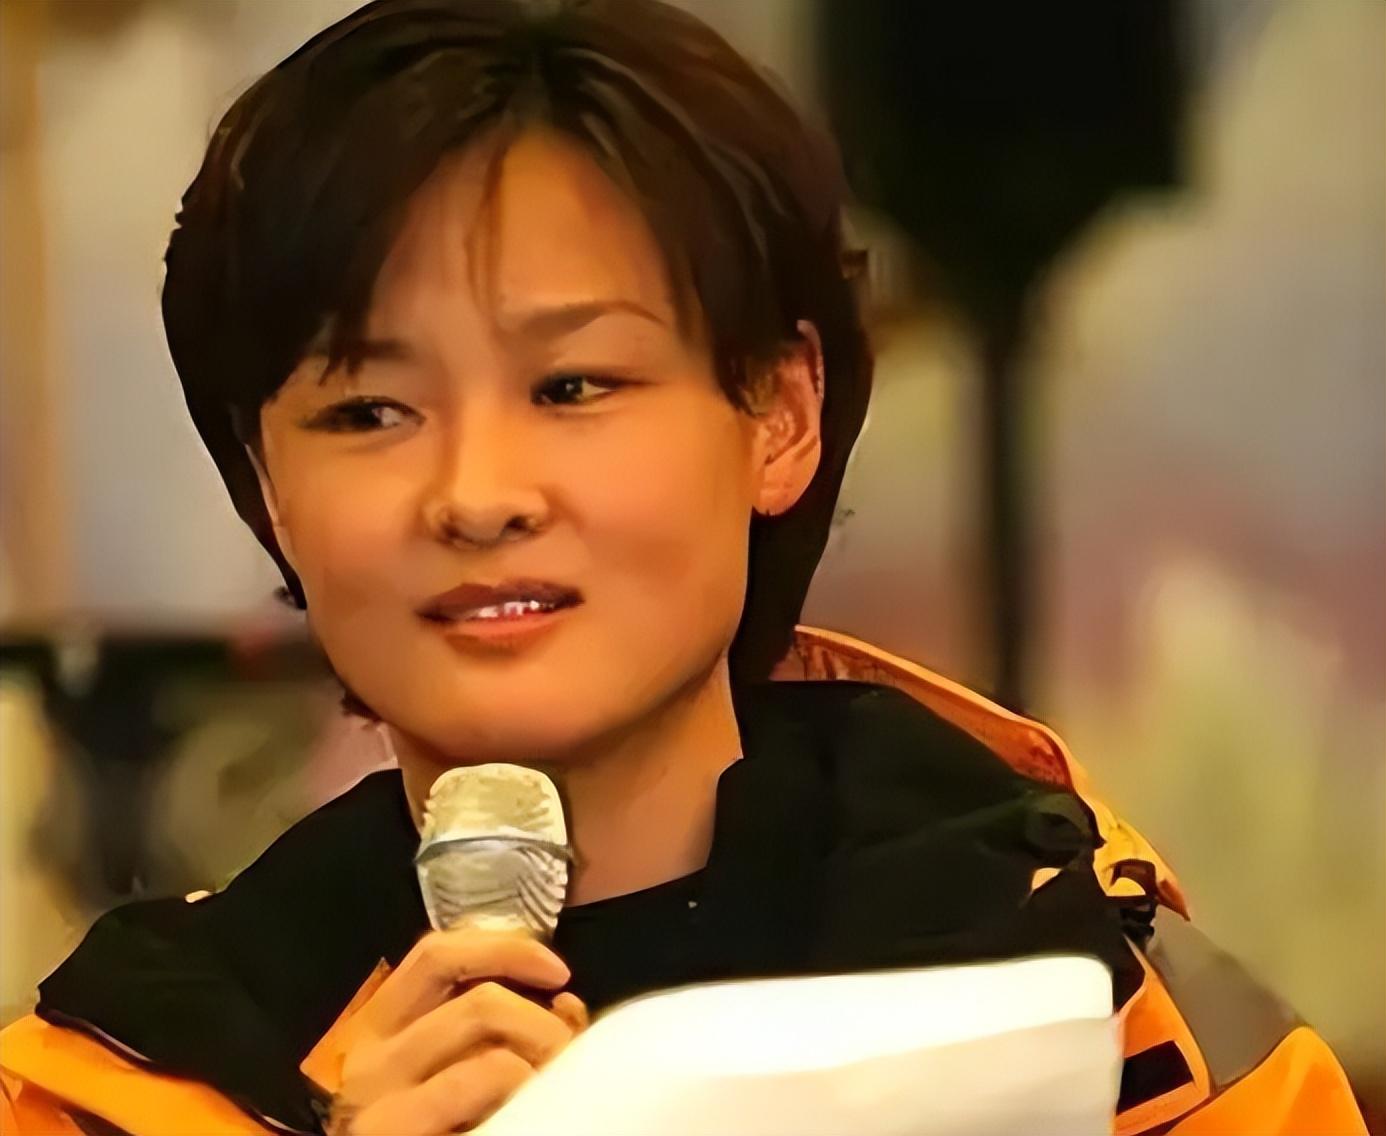 16年过去了,那个在汶川一哭成名的央视主持人李小萌,如今怎样了